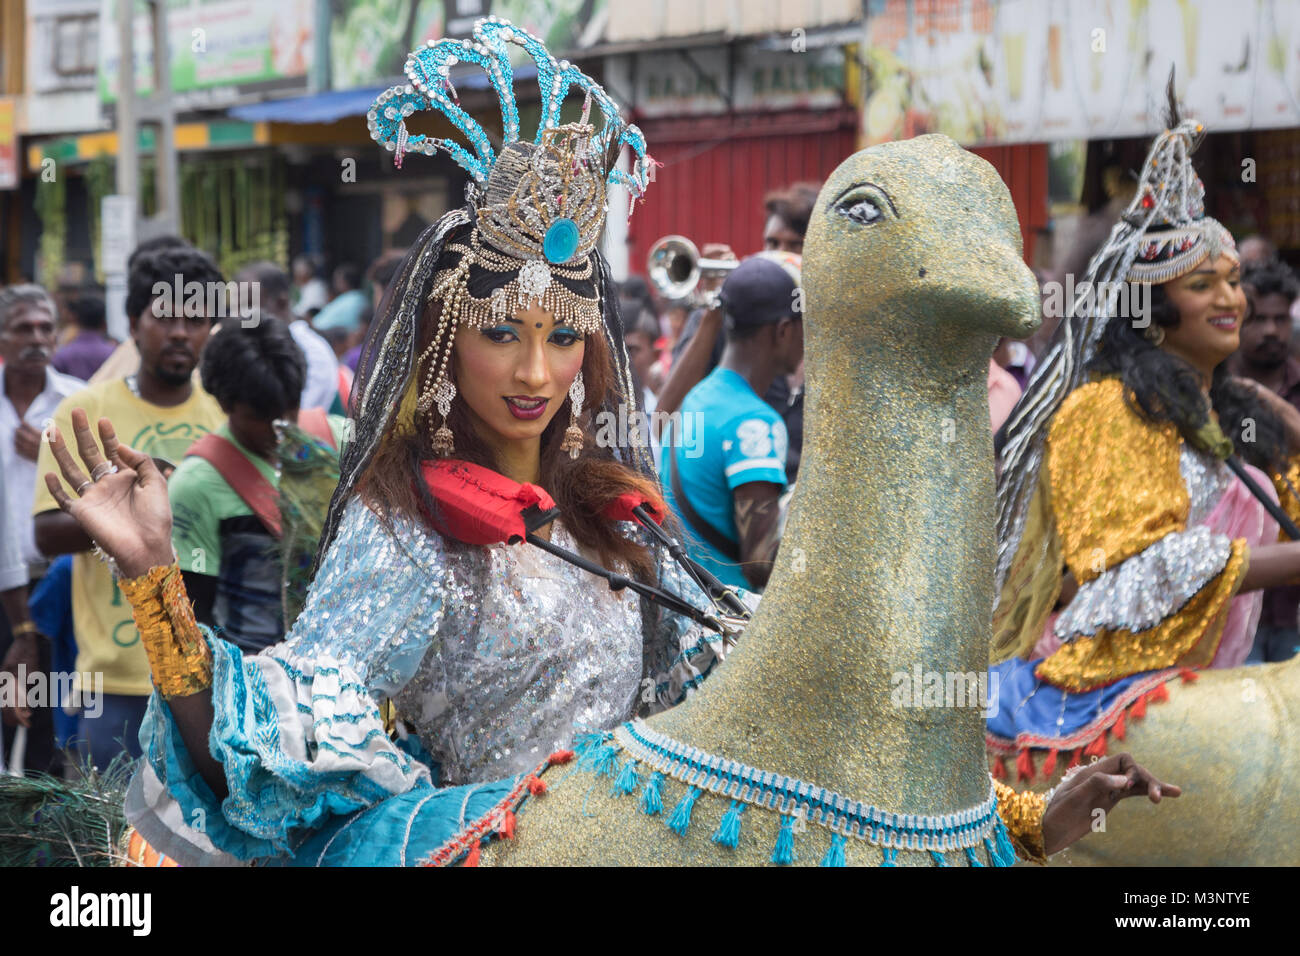 Junger Mann gekleidet, wie eine Frau, die traditionelle Parade Kleidung  kostüm Tanz in Sri Lanka Matale Stockfotografie - Alamy